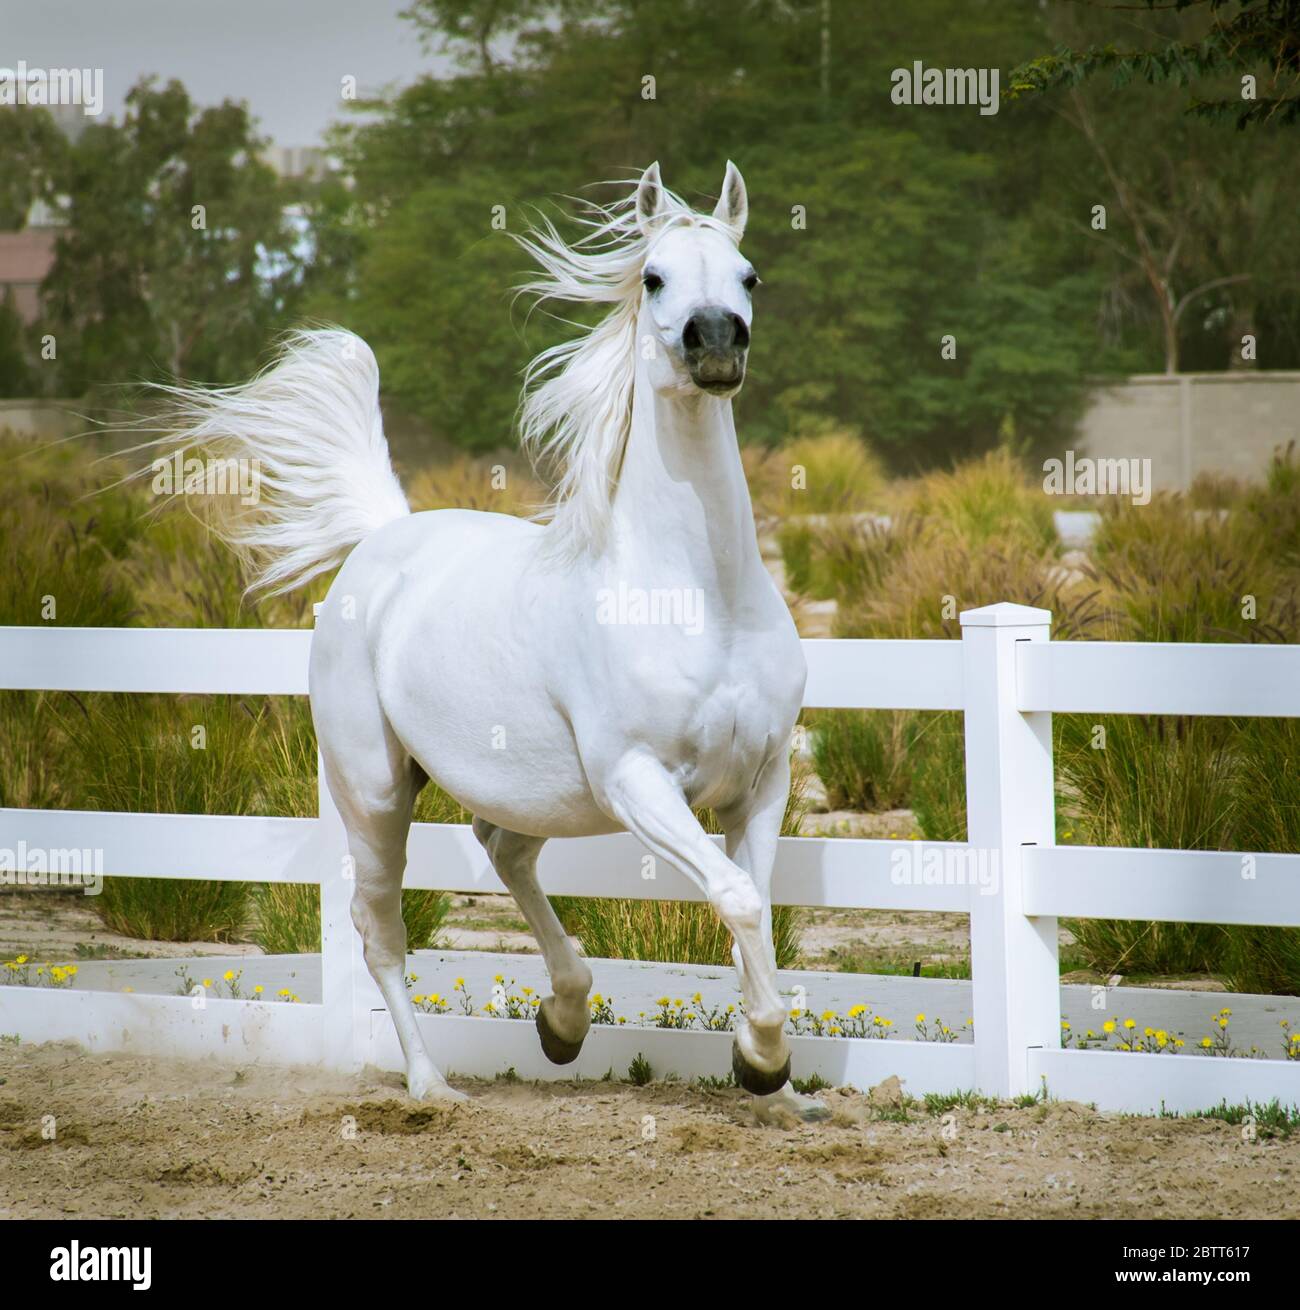 Cheval arabe de couleur blanche courant et s'entraîner dans un enclos qui possède des clôtures blanches. Banque D'Images